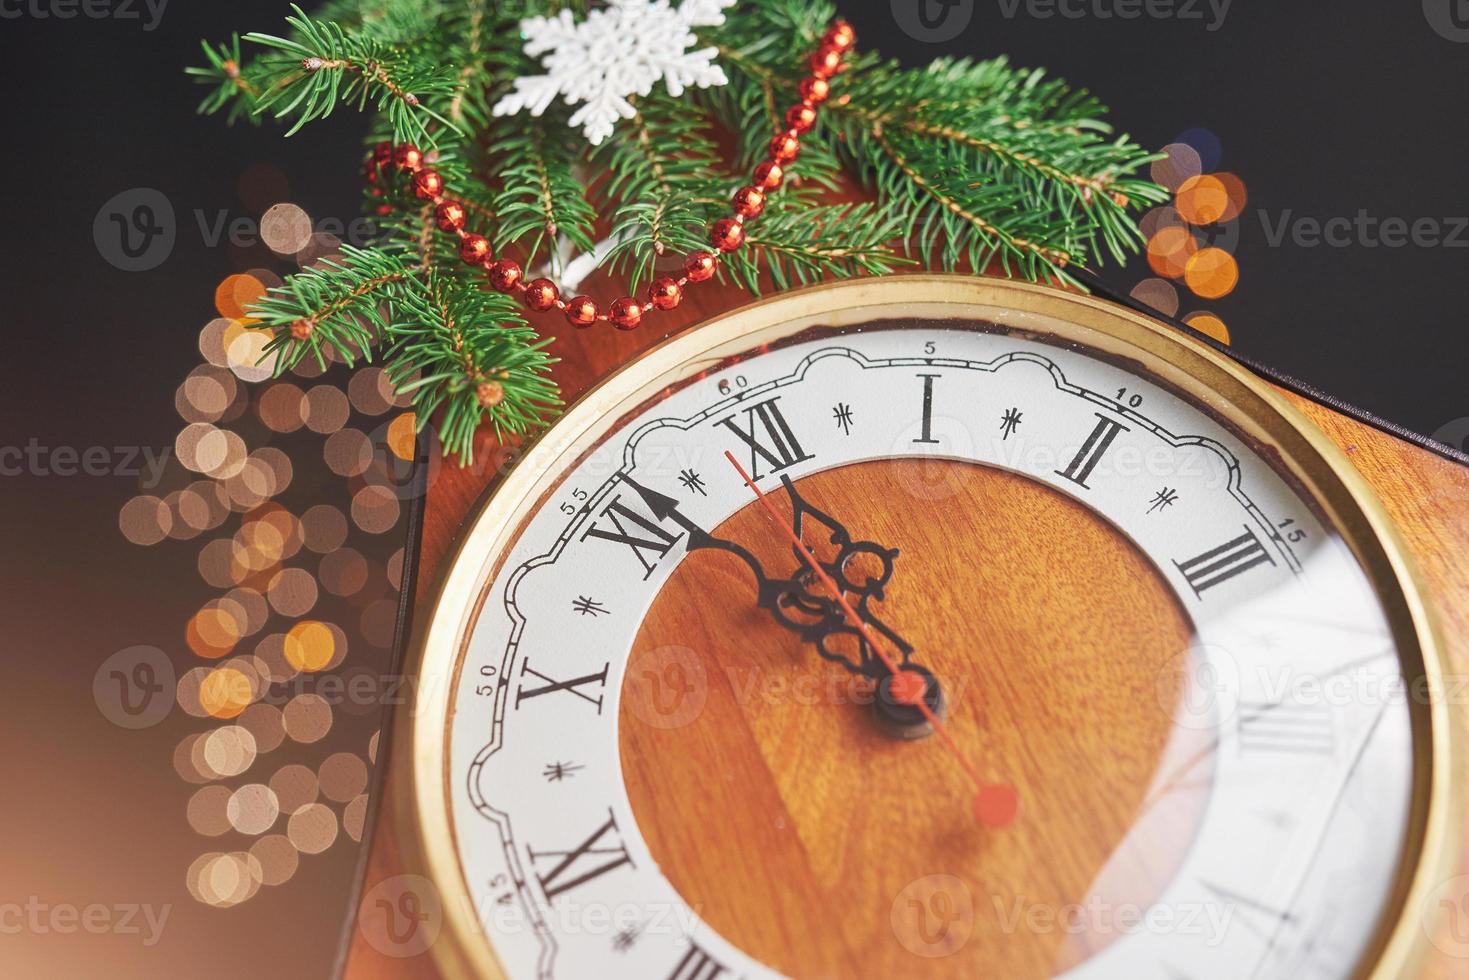 reloj de año nuevo. relojes antiguos y adornos navideños. concepto de año nuevo y navidad. foto